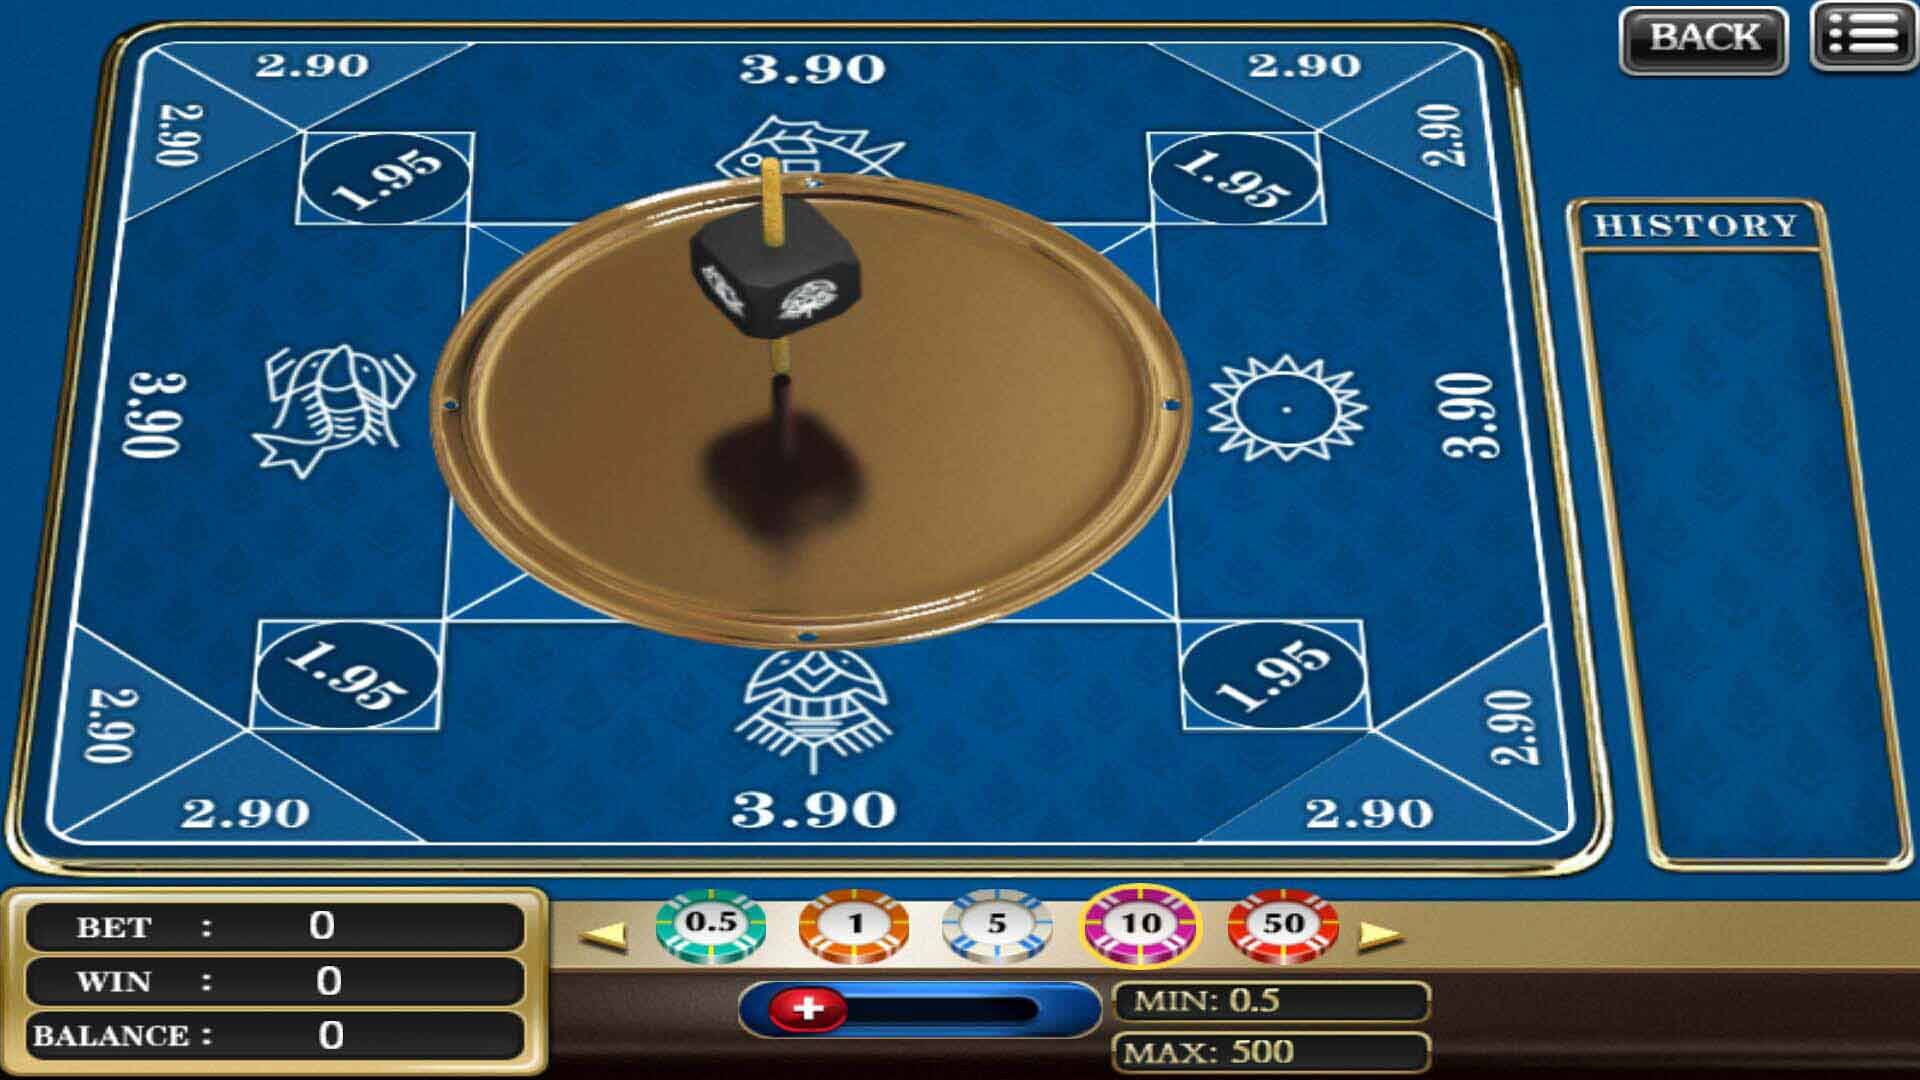 SCR888 casino